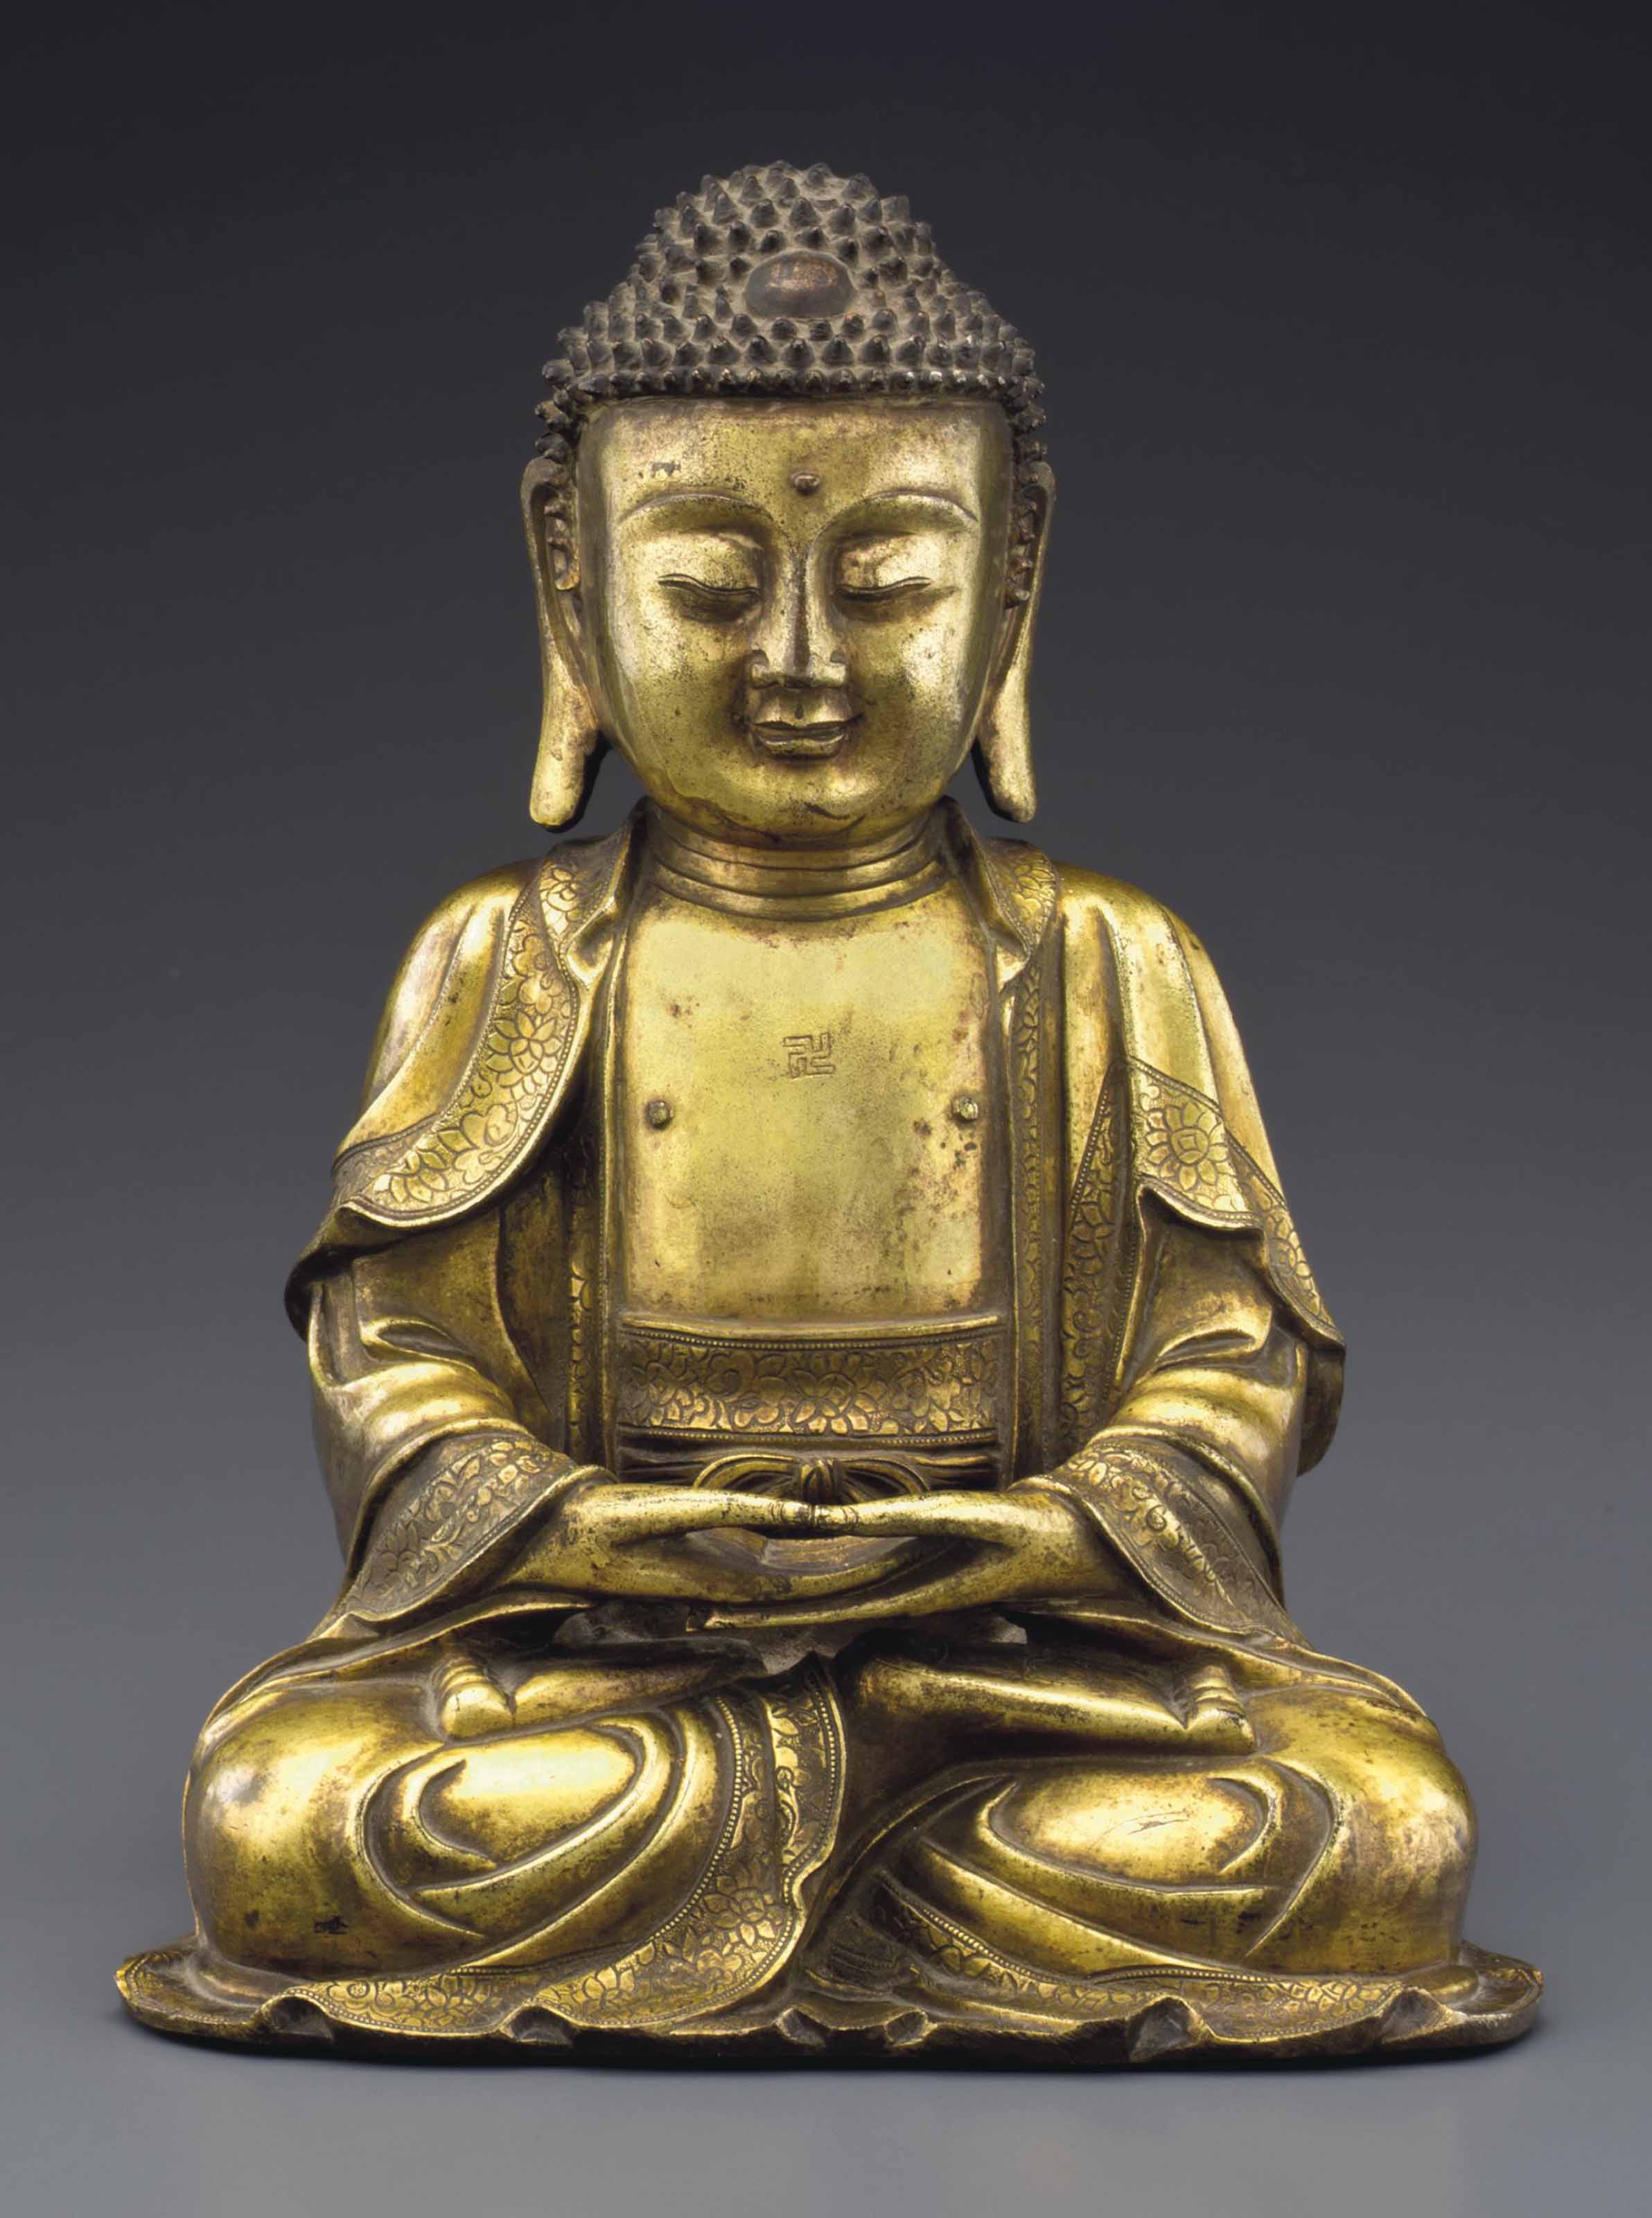  明十六/十七世紀 銅鎏金佛坐像